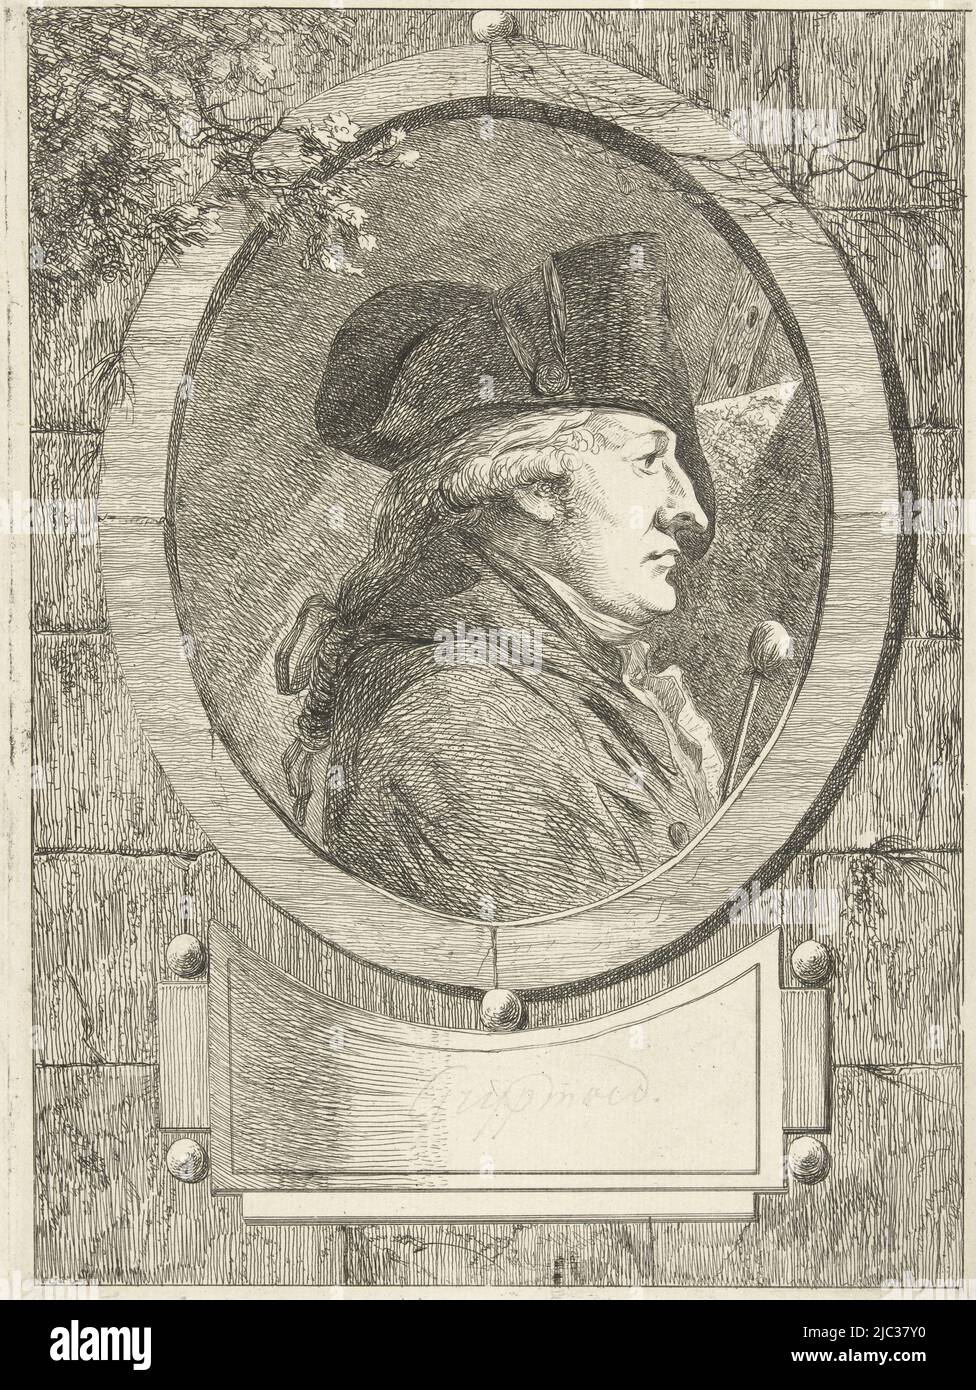 Ritratto busto e profilo del printmaker e disegnatore Geerlig Grijpmoed. È raffigurato in una cornice ovale con parrucca bianca e cuciture sulla testa, vicino ad un bastone e un cavalletto. Sotto la cornice un cartouche., Ritratto di Geerlig Grijpmoed, tipografo: Hermanus Fock, (firmato dall'artista), disegnatore intermedio: Hermanus Fock, Amsterdam, 1781 - 1822, carta, incisione, a 264 mm x l 192 mm Foto Stock